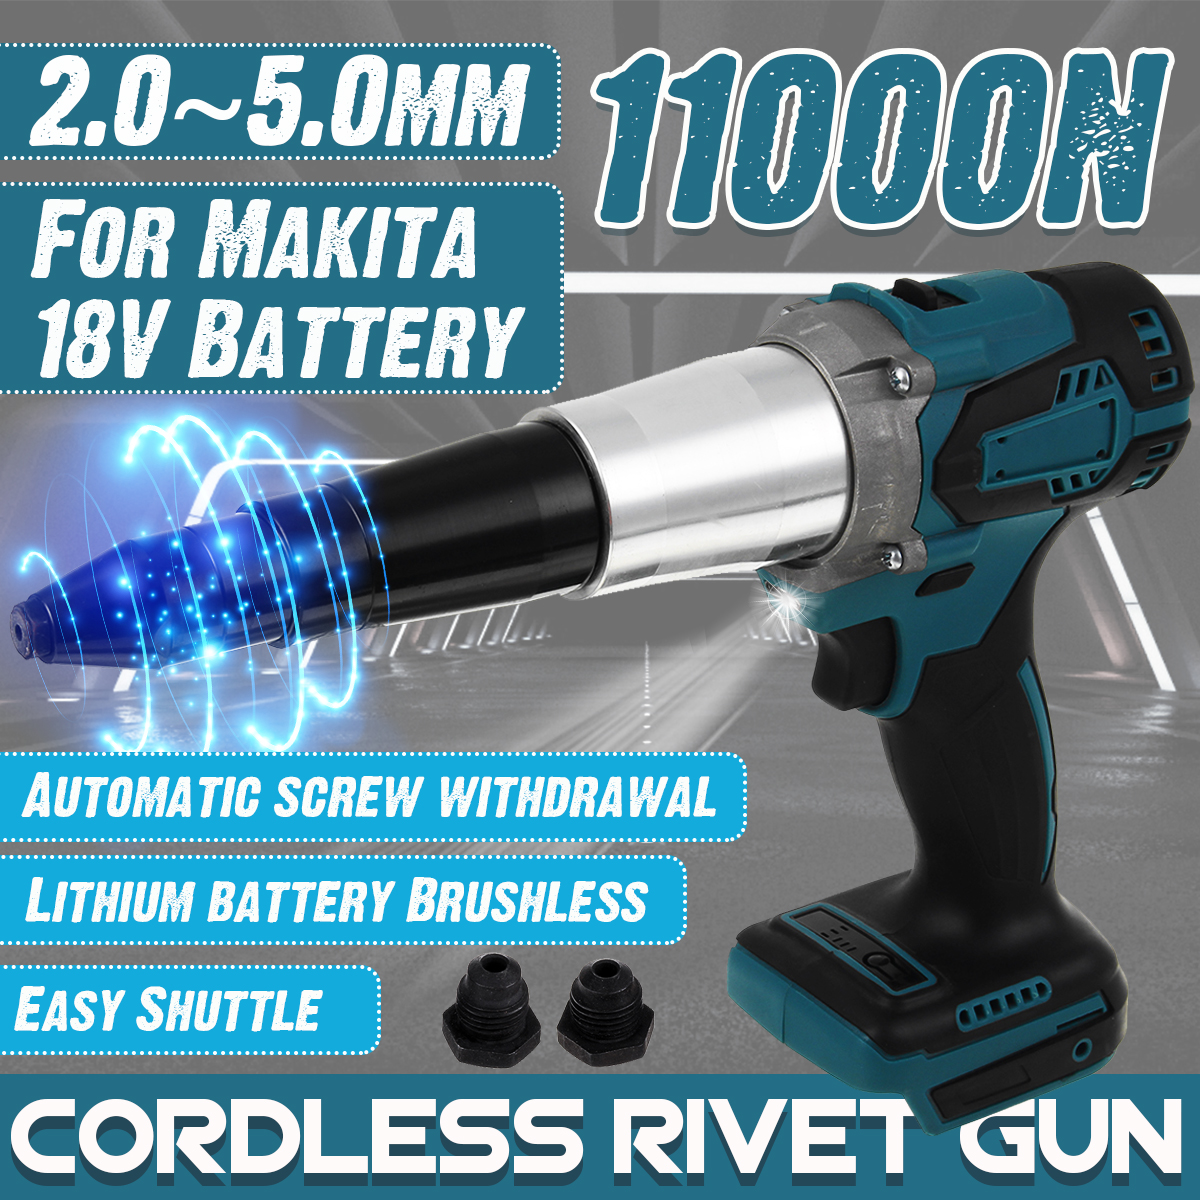 1500rpm-1200W-380Nm-Electric-Cordless-Blind-Rivet-Guns-LED-Working-Light-For-Makita-18V-Battery-1795652-1